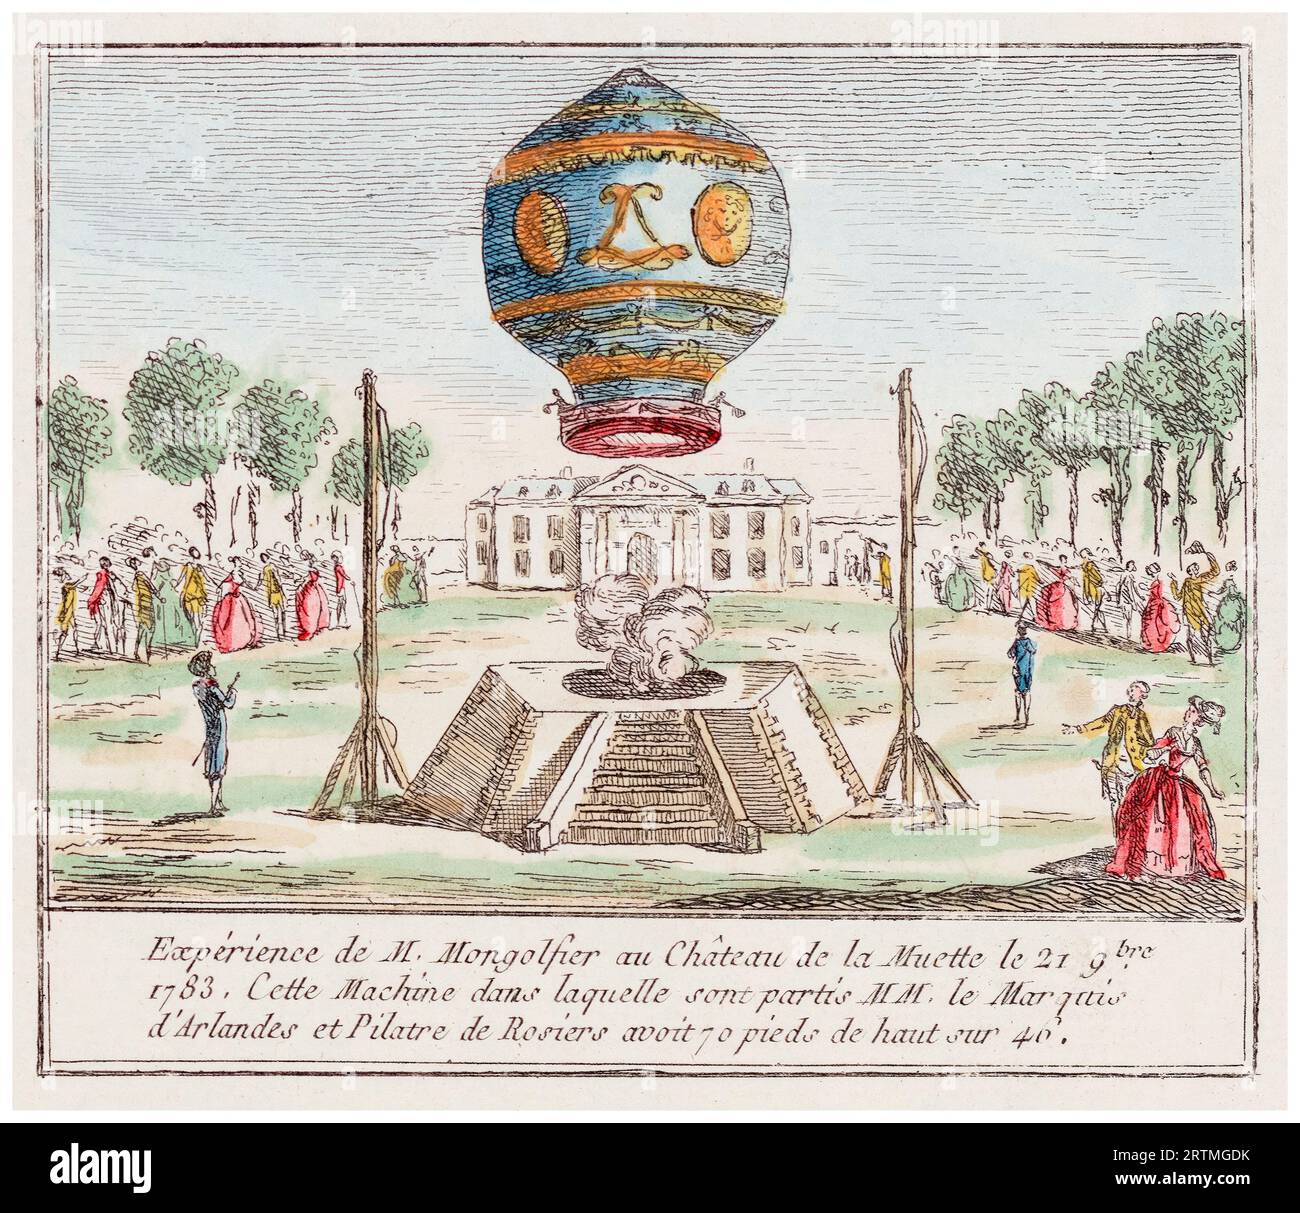 Jean-Francois Pilâtre de Rozier und der Marquis d’Arlands unternahmen am 21. November 1783 den ersten bemannten Flug in einem Montgolfier-Heißluftballon vor König Ludwig XVI. Aus dem Garten der Château de la Muette. Handfarbige Gravur, 1783 Stockfoto